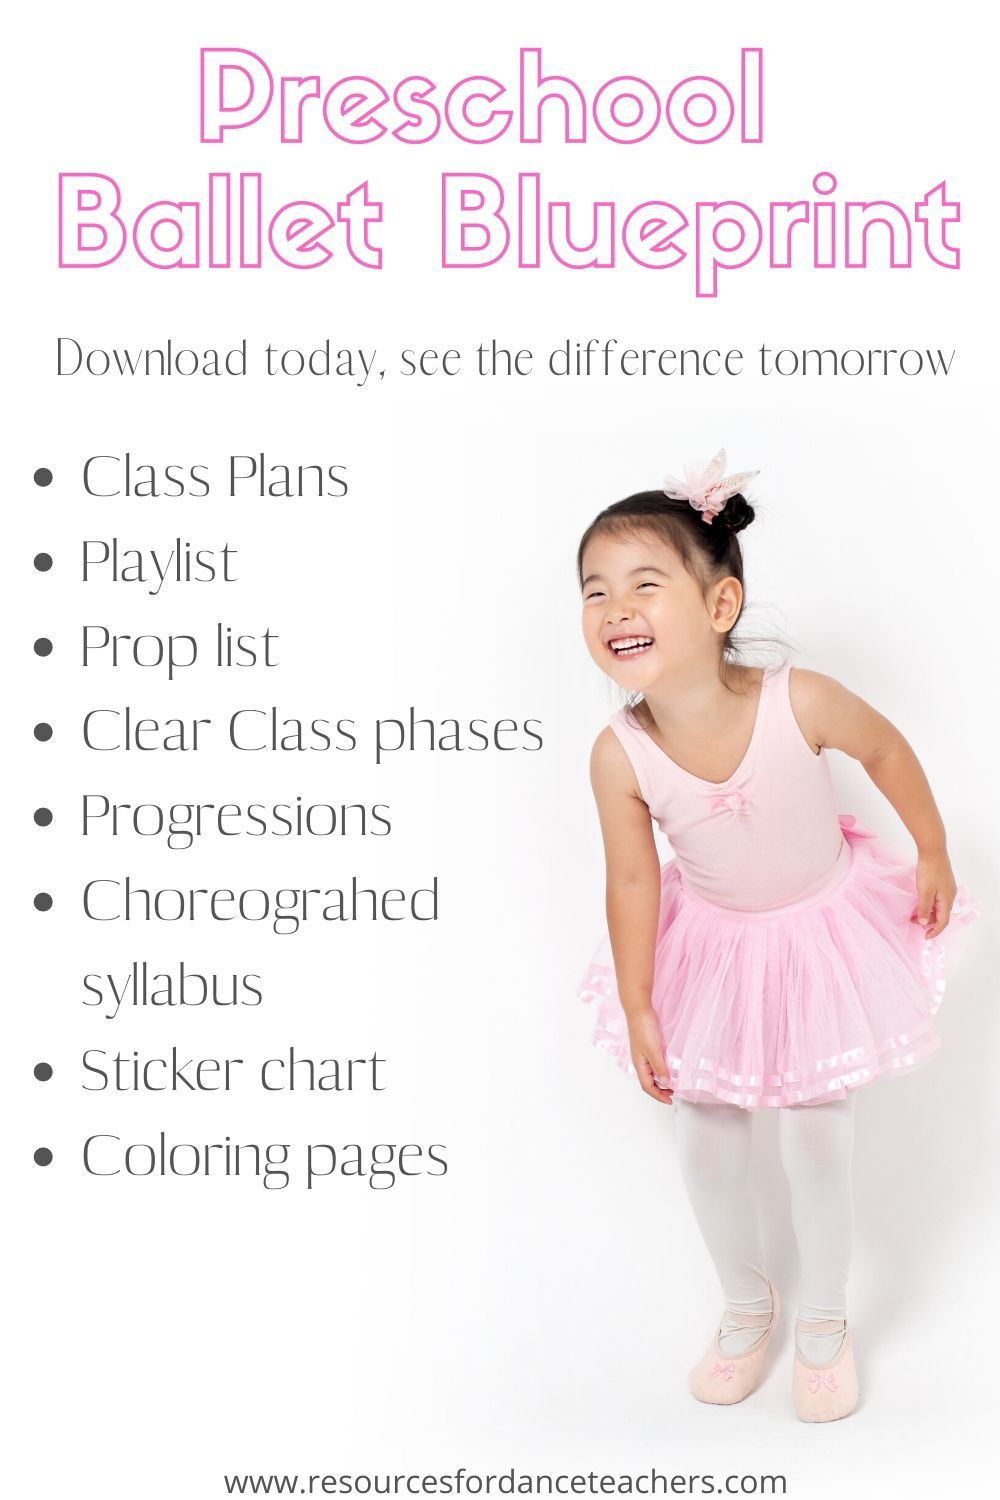 Preschool Ballet Blueprint - Preschool Ballet Curriculum For